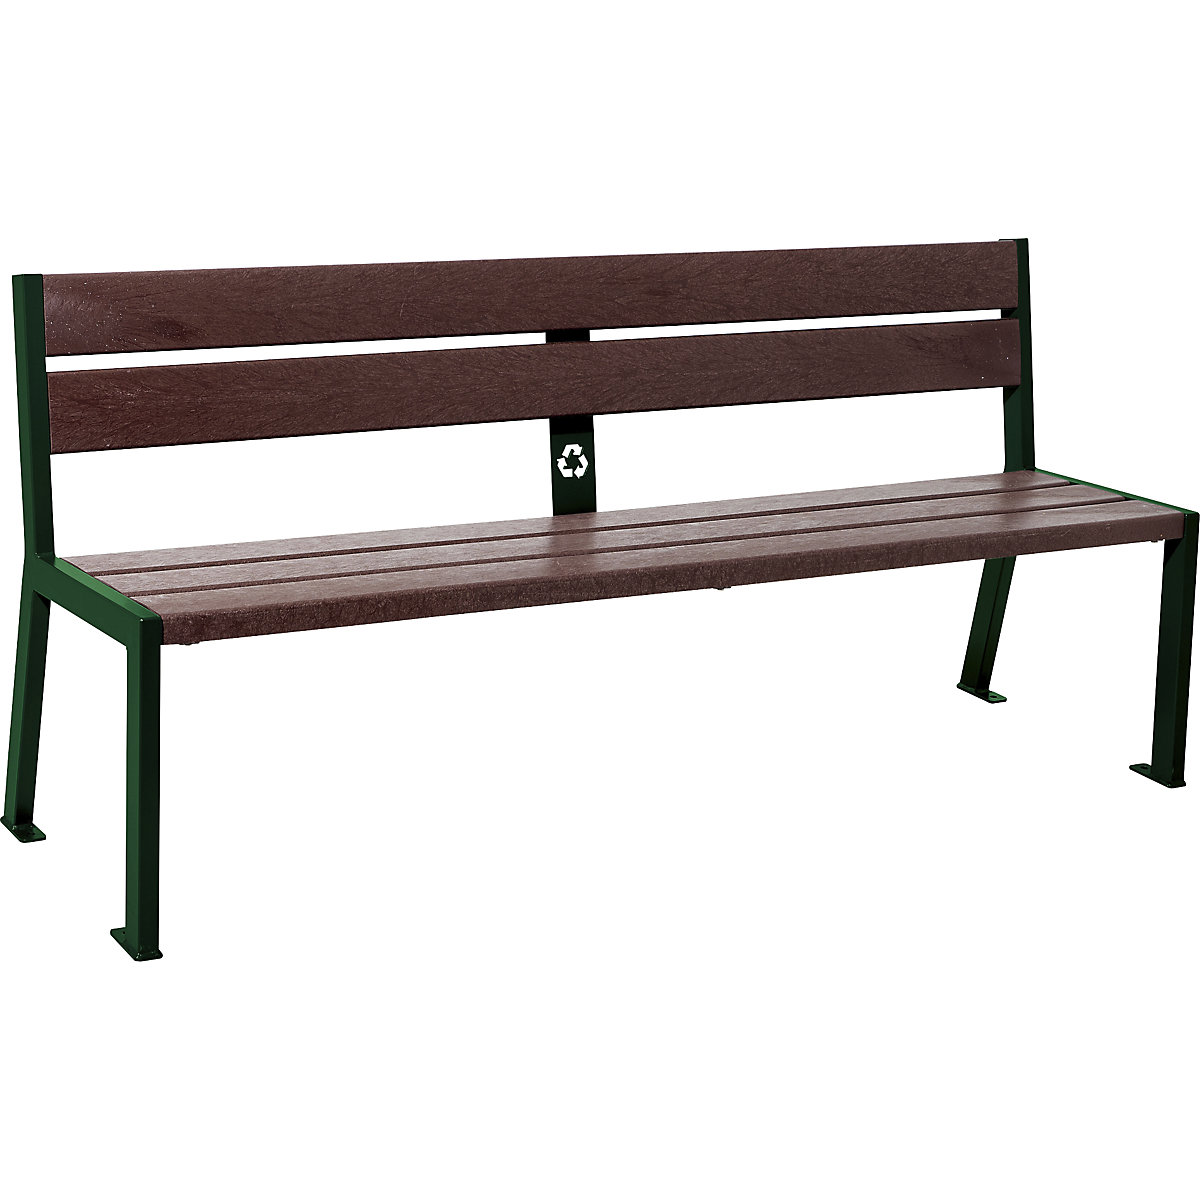 PROCITY Sitzbank SILAOS® aus Recycling-Kunststoff, mit Rückenlehne, moosgrün RAL 6005, braun, 5 Sitz- und Lehnenbohlen